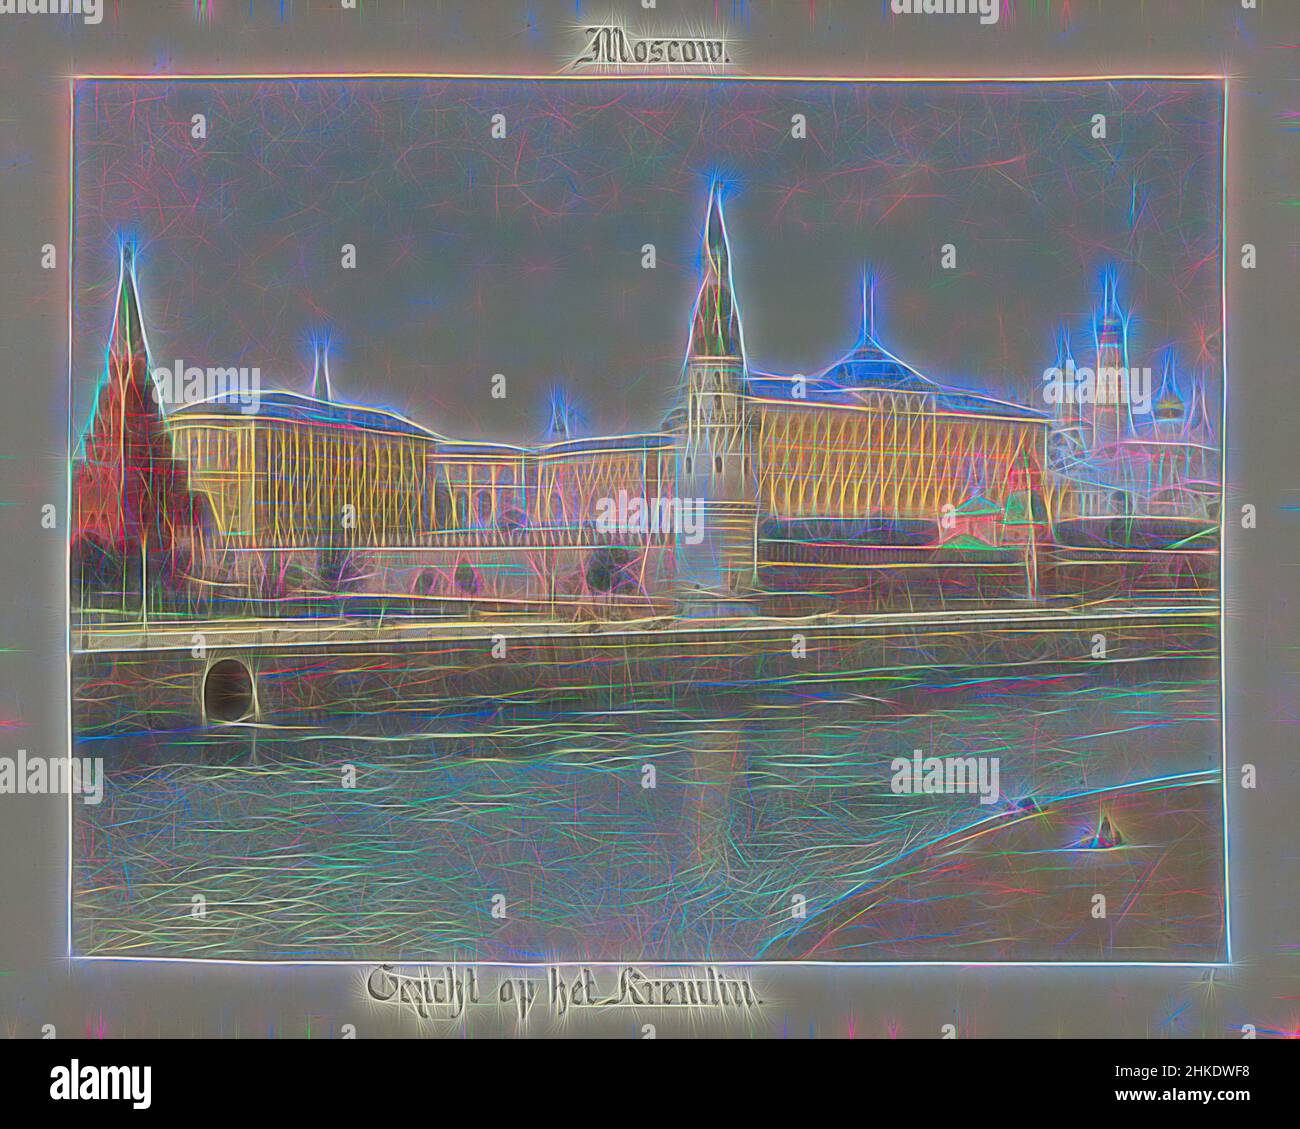 Inspiriert von Blick auf den Kreml und den Moskwa-Fluss, Moskau, Blick auf den Kreml., Ein farbiges Foto des Kremls von der anderen Seite der Brücke über die Moskwa., Henry Pauw van Wieldrecht, 1898, Papier, Albumendruck, Höhe 220 mm × Breite 275 mmhöhe 259 mm × Breite 365 mm, neu erfunden von Artotop. Klassische Kunst neu erfunden mit einem modernen Twist. Design von warmen fröhlichen Leuchten der Helligkeit und Lichtstrahl Strahlkraft. Fotografie inspiriert von Surrealismus und Futurismus, umarmt dynamische Energie der modernen Technologie, Bewegung, Geschwindigkeit und Kultur zu revolutionieren Stockfoto